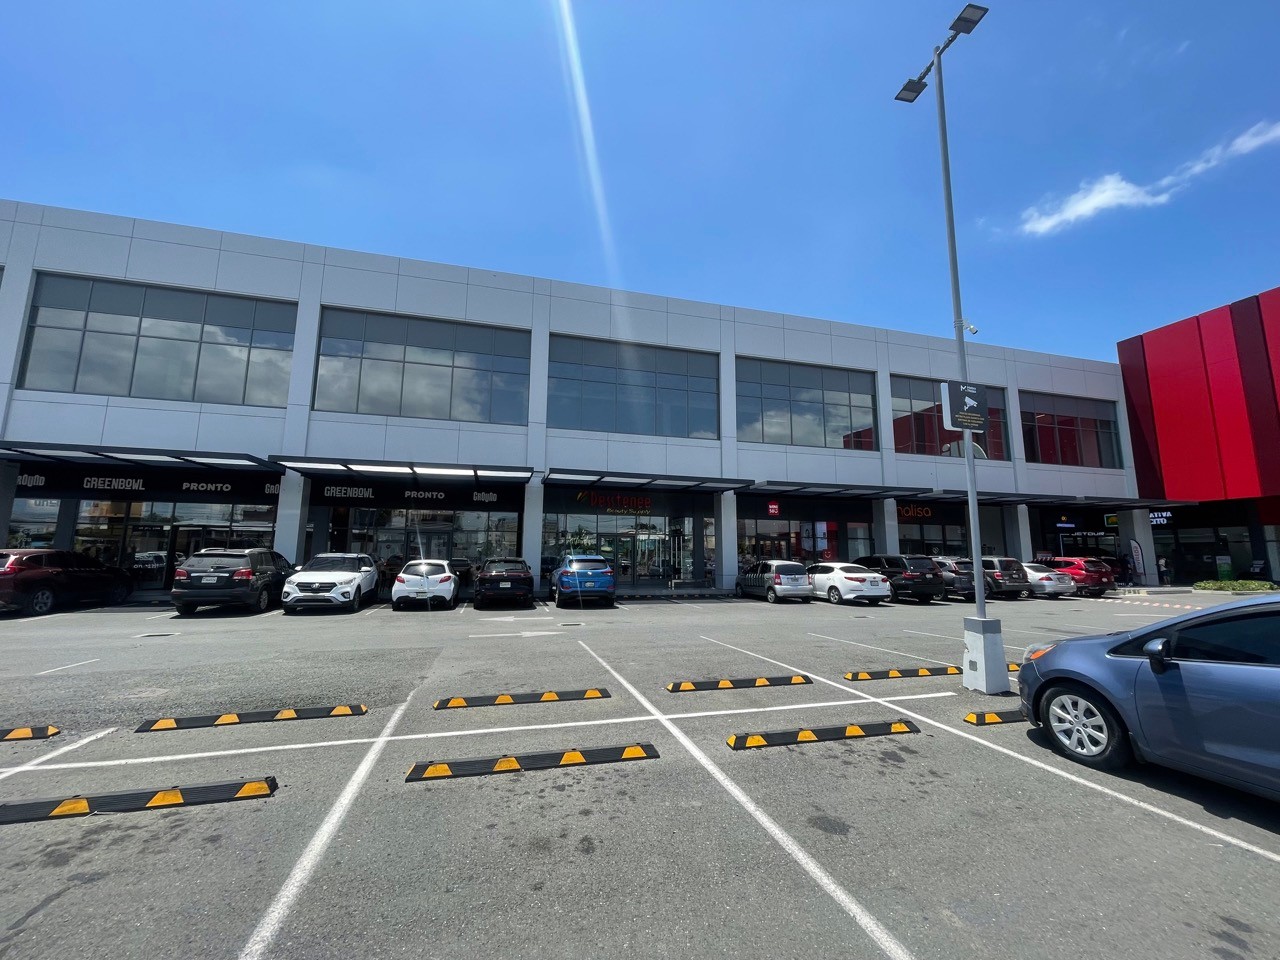 oficinas y locales comerciales - Locales Comerciales en metro Plaza San Isidro dese 138 metros  4